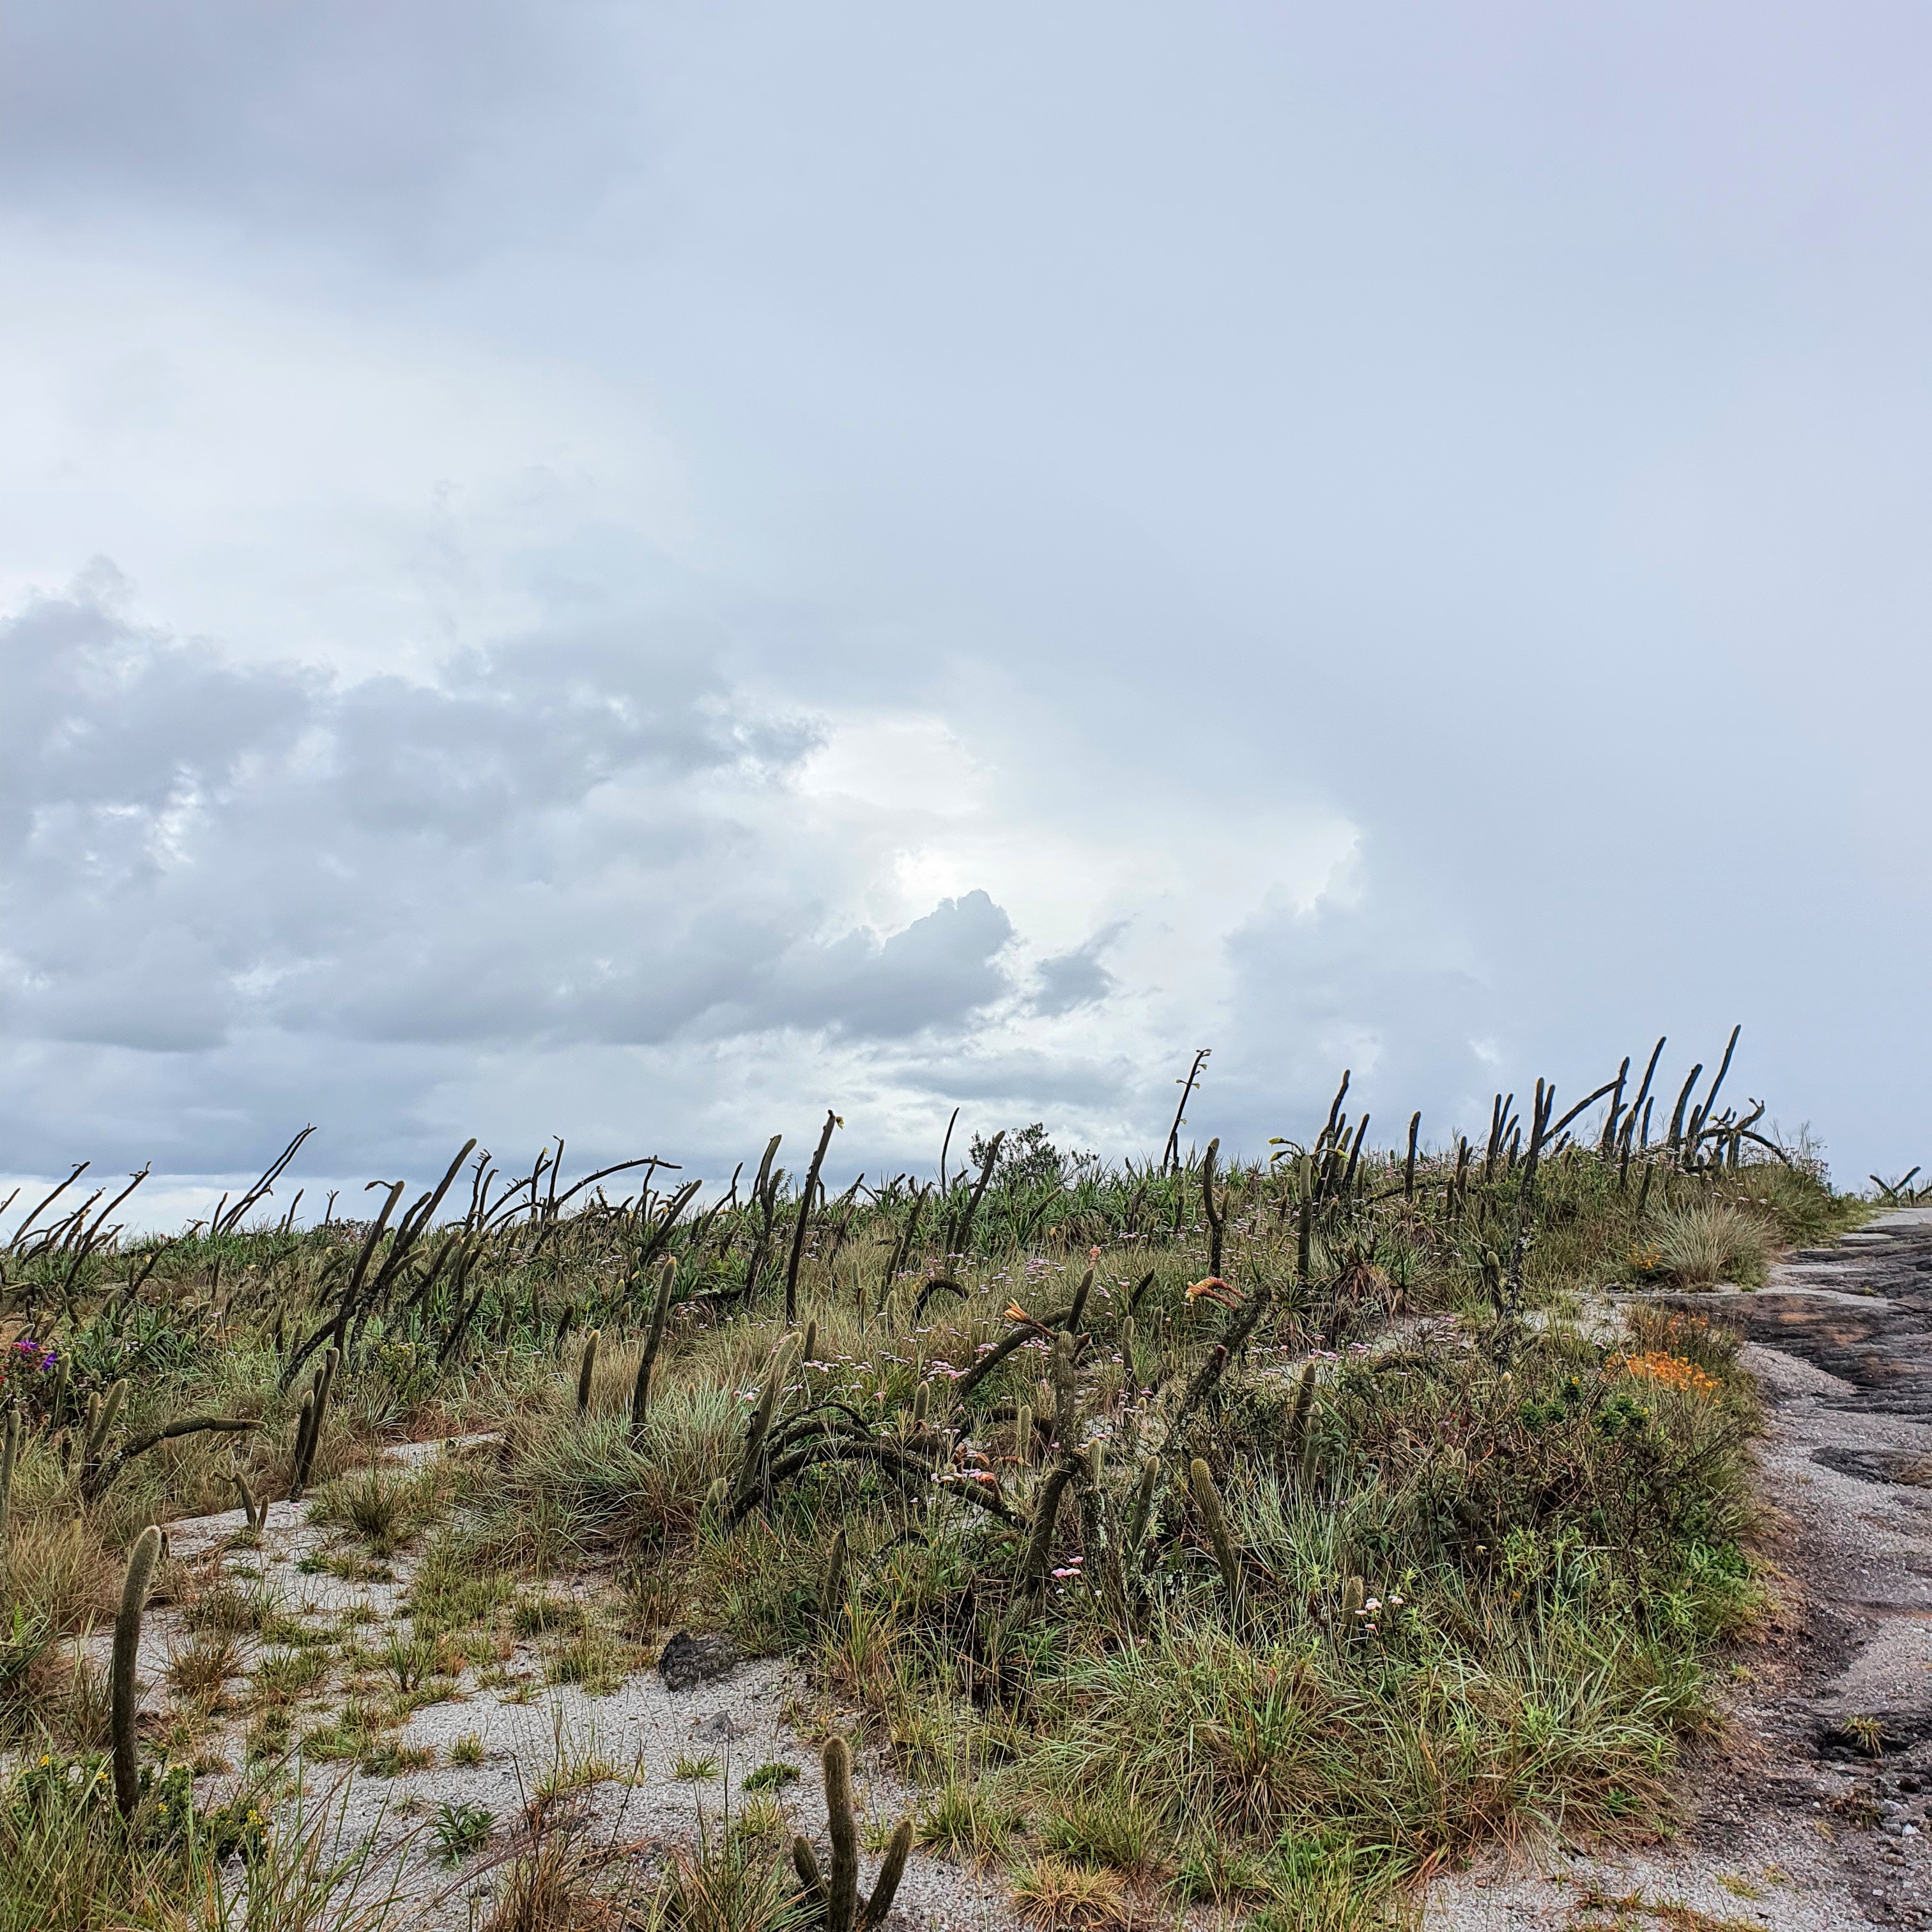 Apesar do clima úmido, cactos se desenvolvem no Parque em função da excelente drenagem do solo.